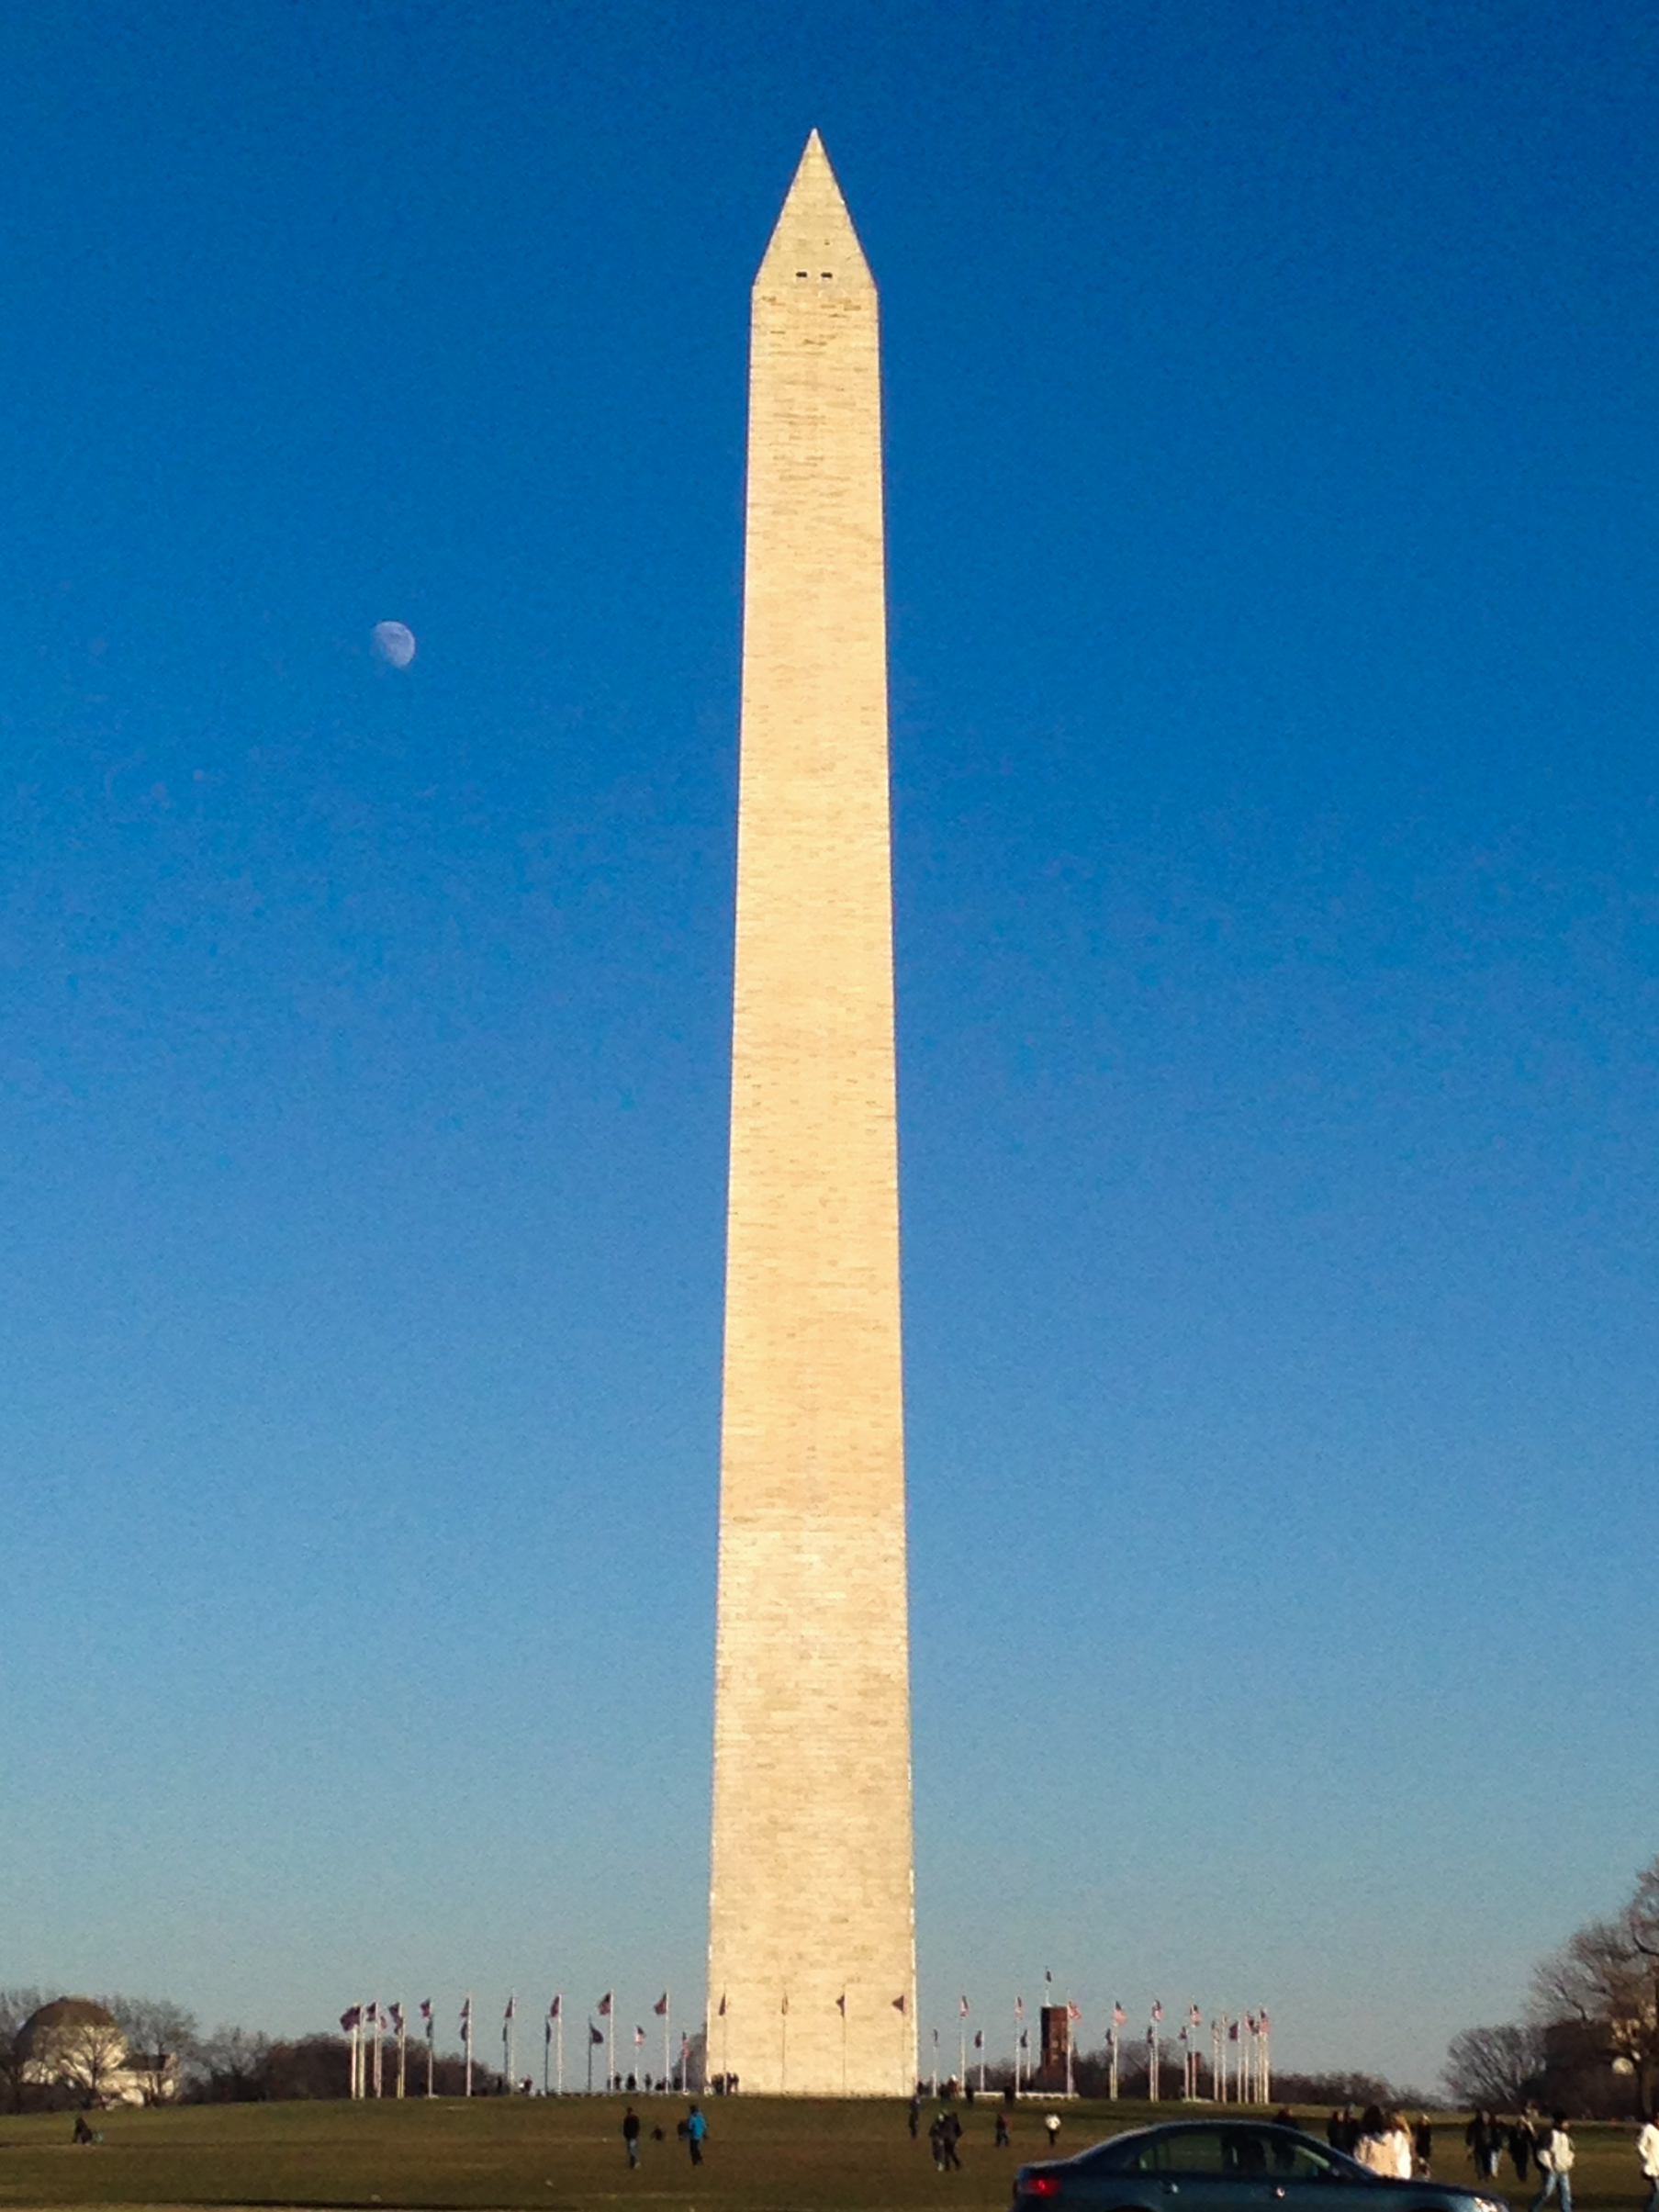 That Washington Monument, again.